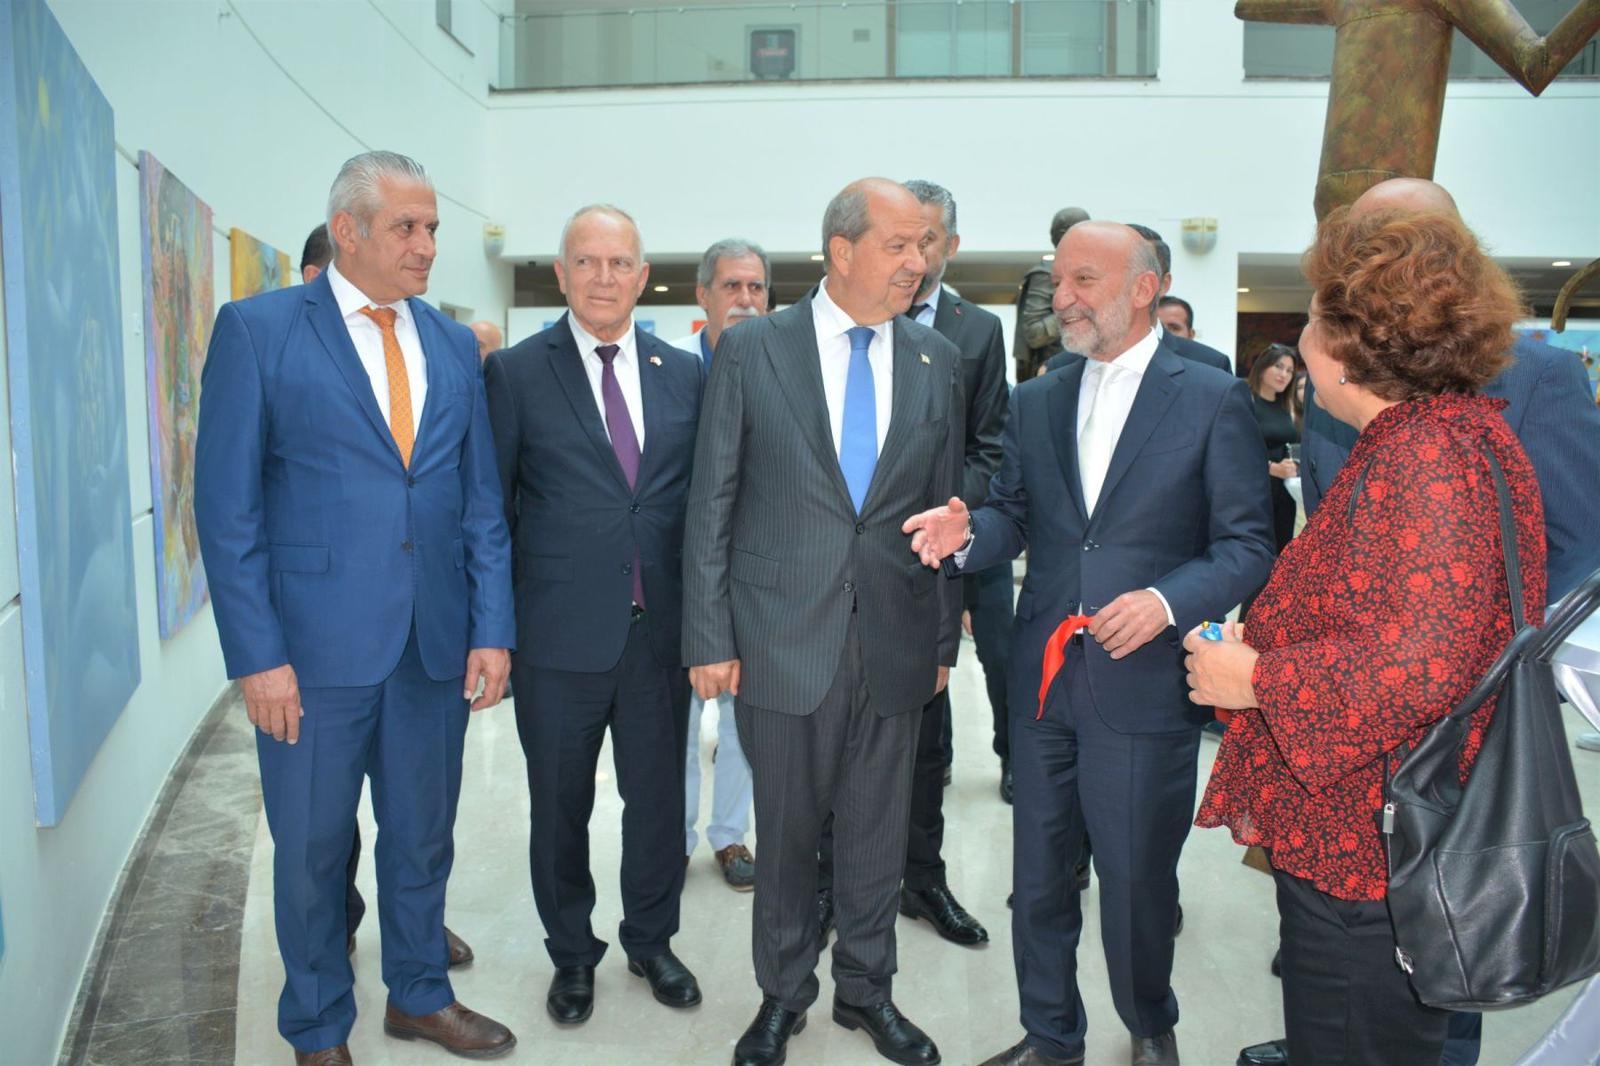 В кипрском университете состоялось торжественное открытие выставки в честь Дня 
независимости Азербайджана (ФОТО)